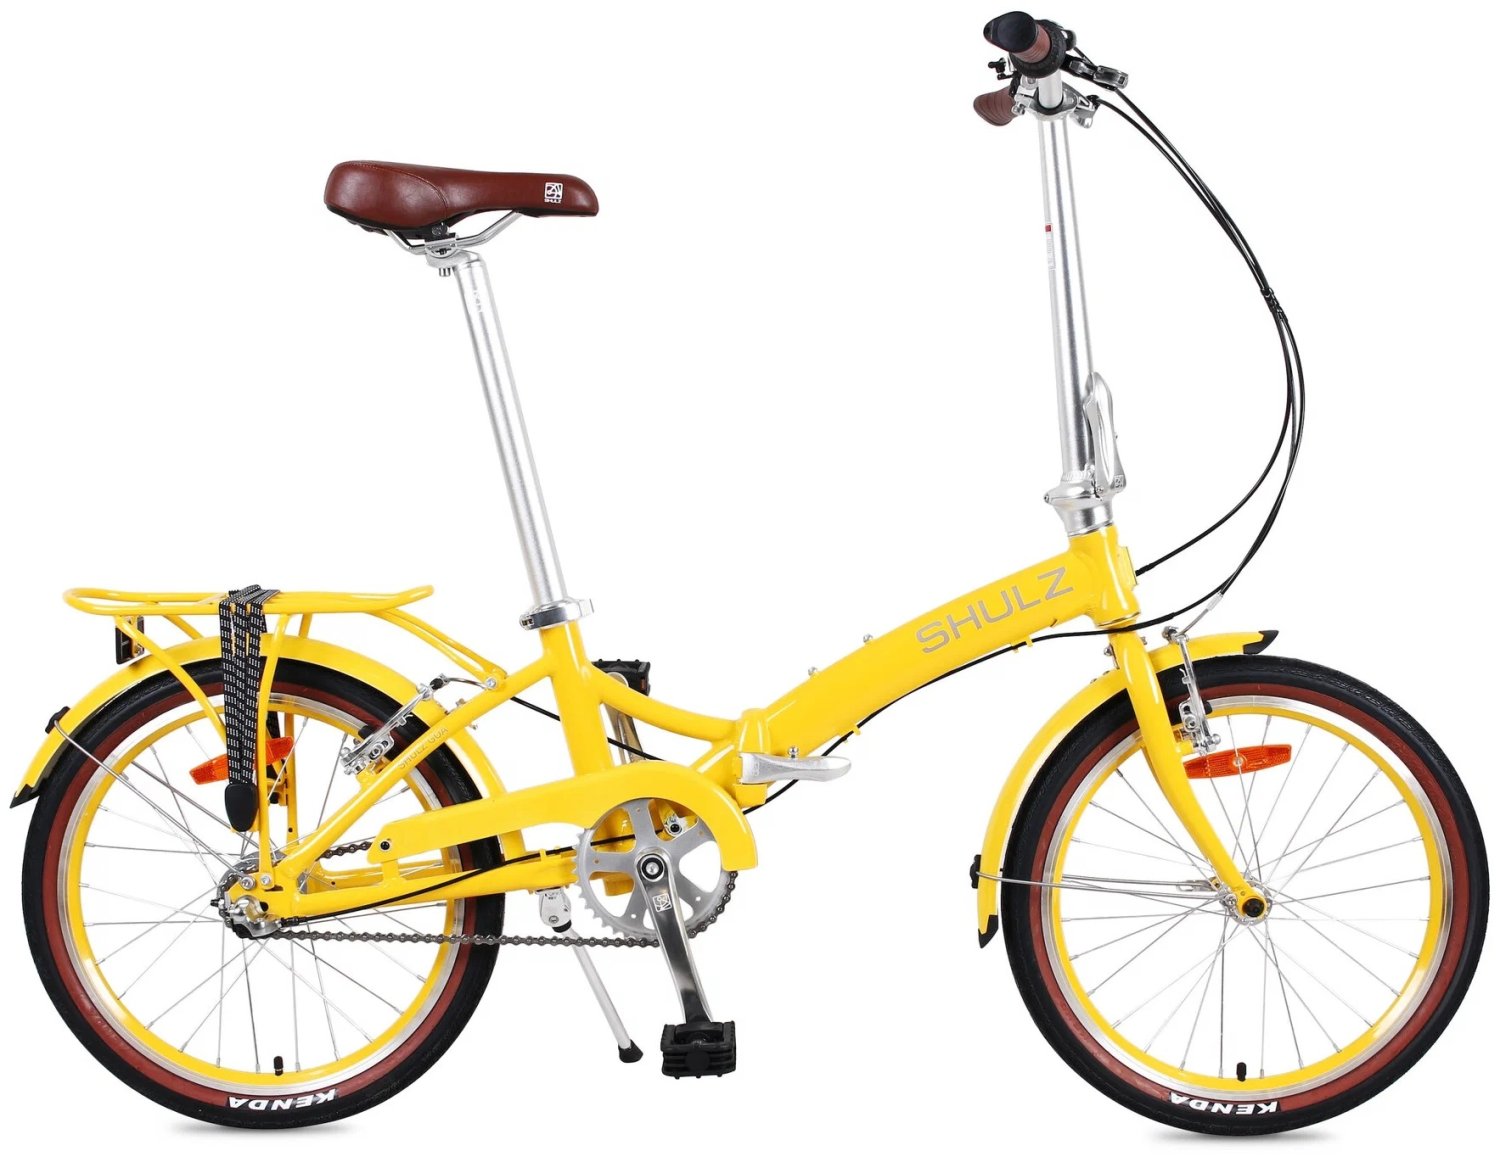 Складной велосипед SHULZ GOA C, 2021,19GC_YS-722 комфортный велосипед haro lxi flow 2 27 5 год 2021 серебристый ростовка 17